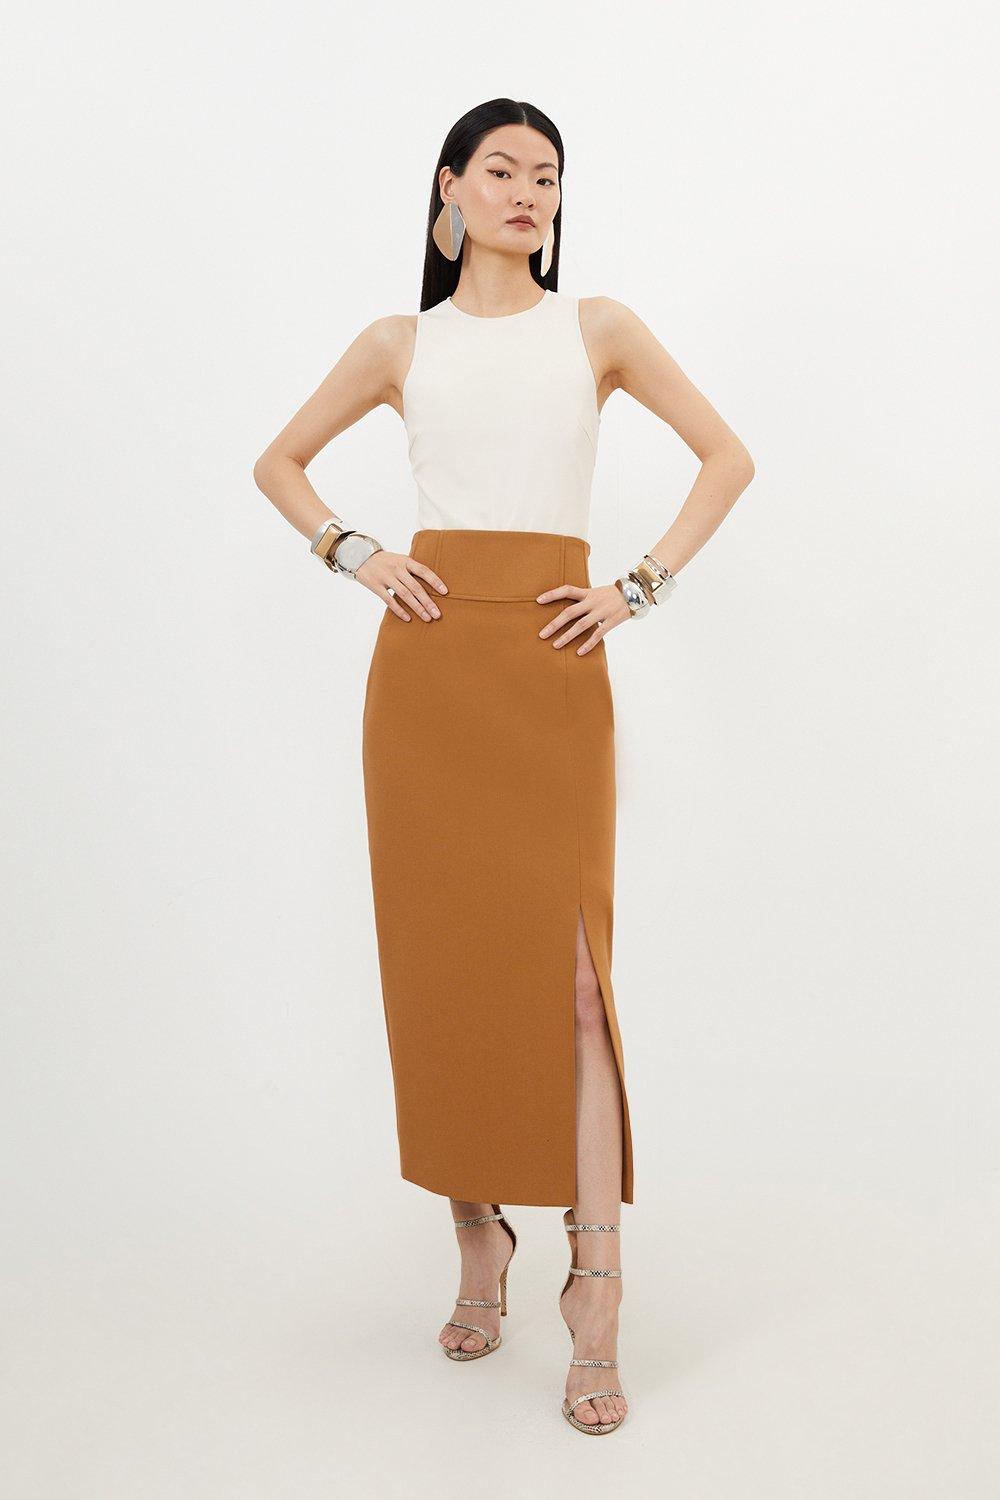 Миниатюрная компактная эластичная юбка-карандаш миди с боковым разрезом Karen Millen, бежевый простая юбка женская черная юбка миди с высокой талией и боковым разрезом модель 2021 года корейская мода эластичная облегающая юбка трапе